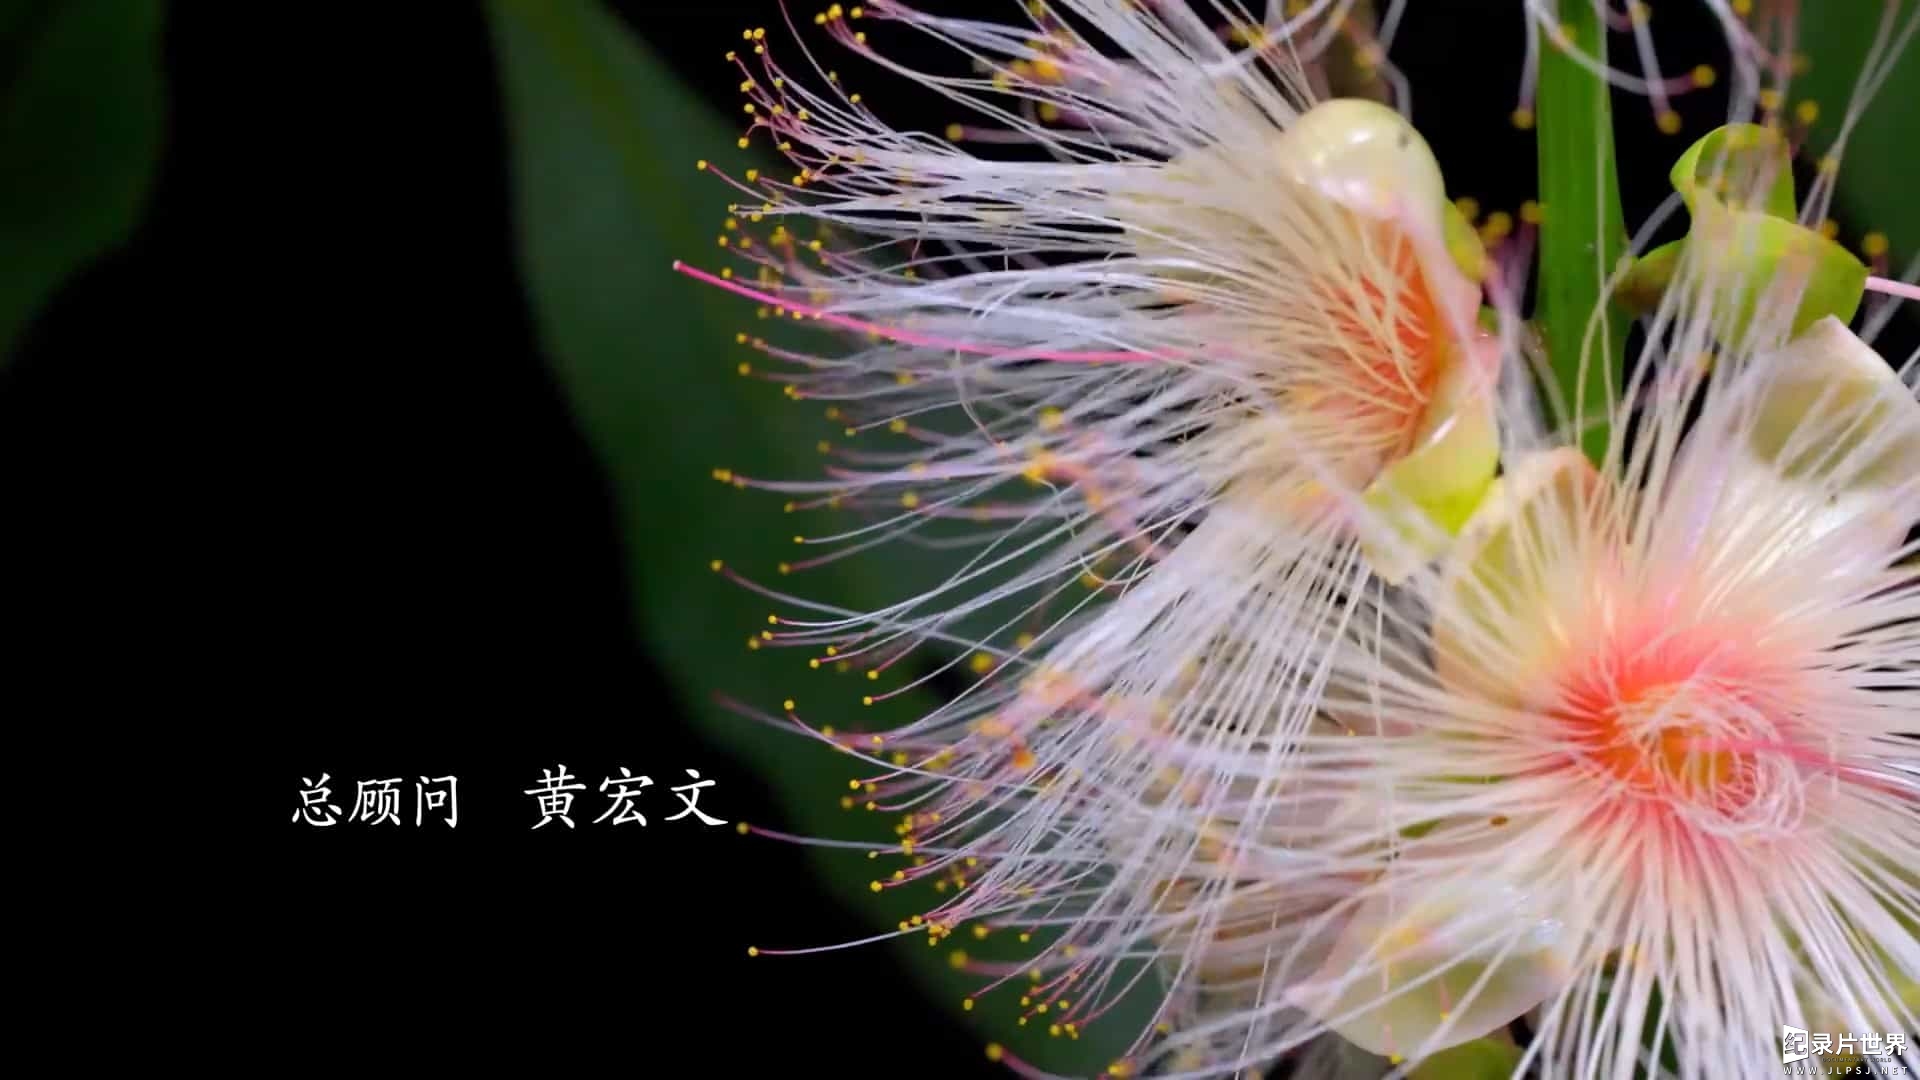 央视纪录片/ 植物纪录片《影响世界的中国植物 The Journey of Chinese Plants 2019》全10集